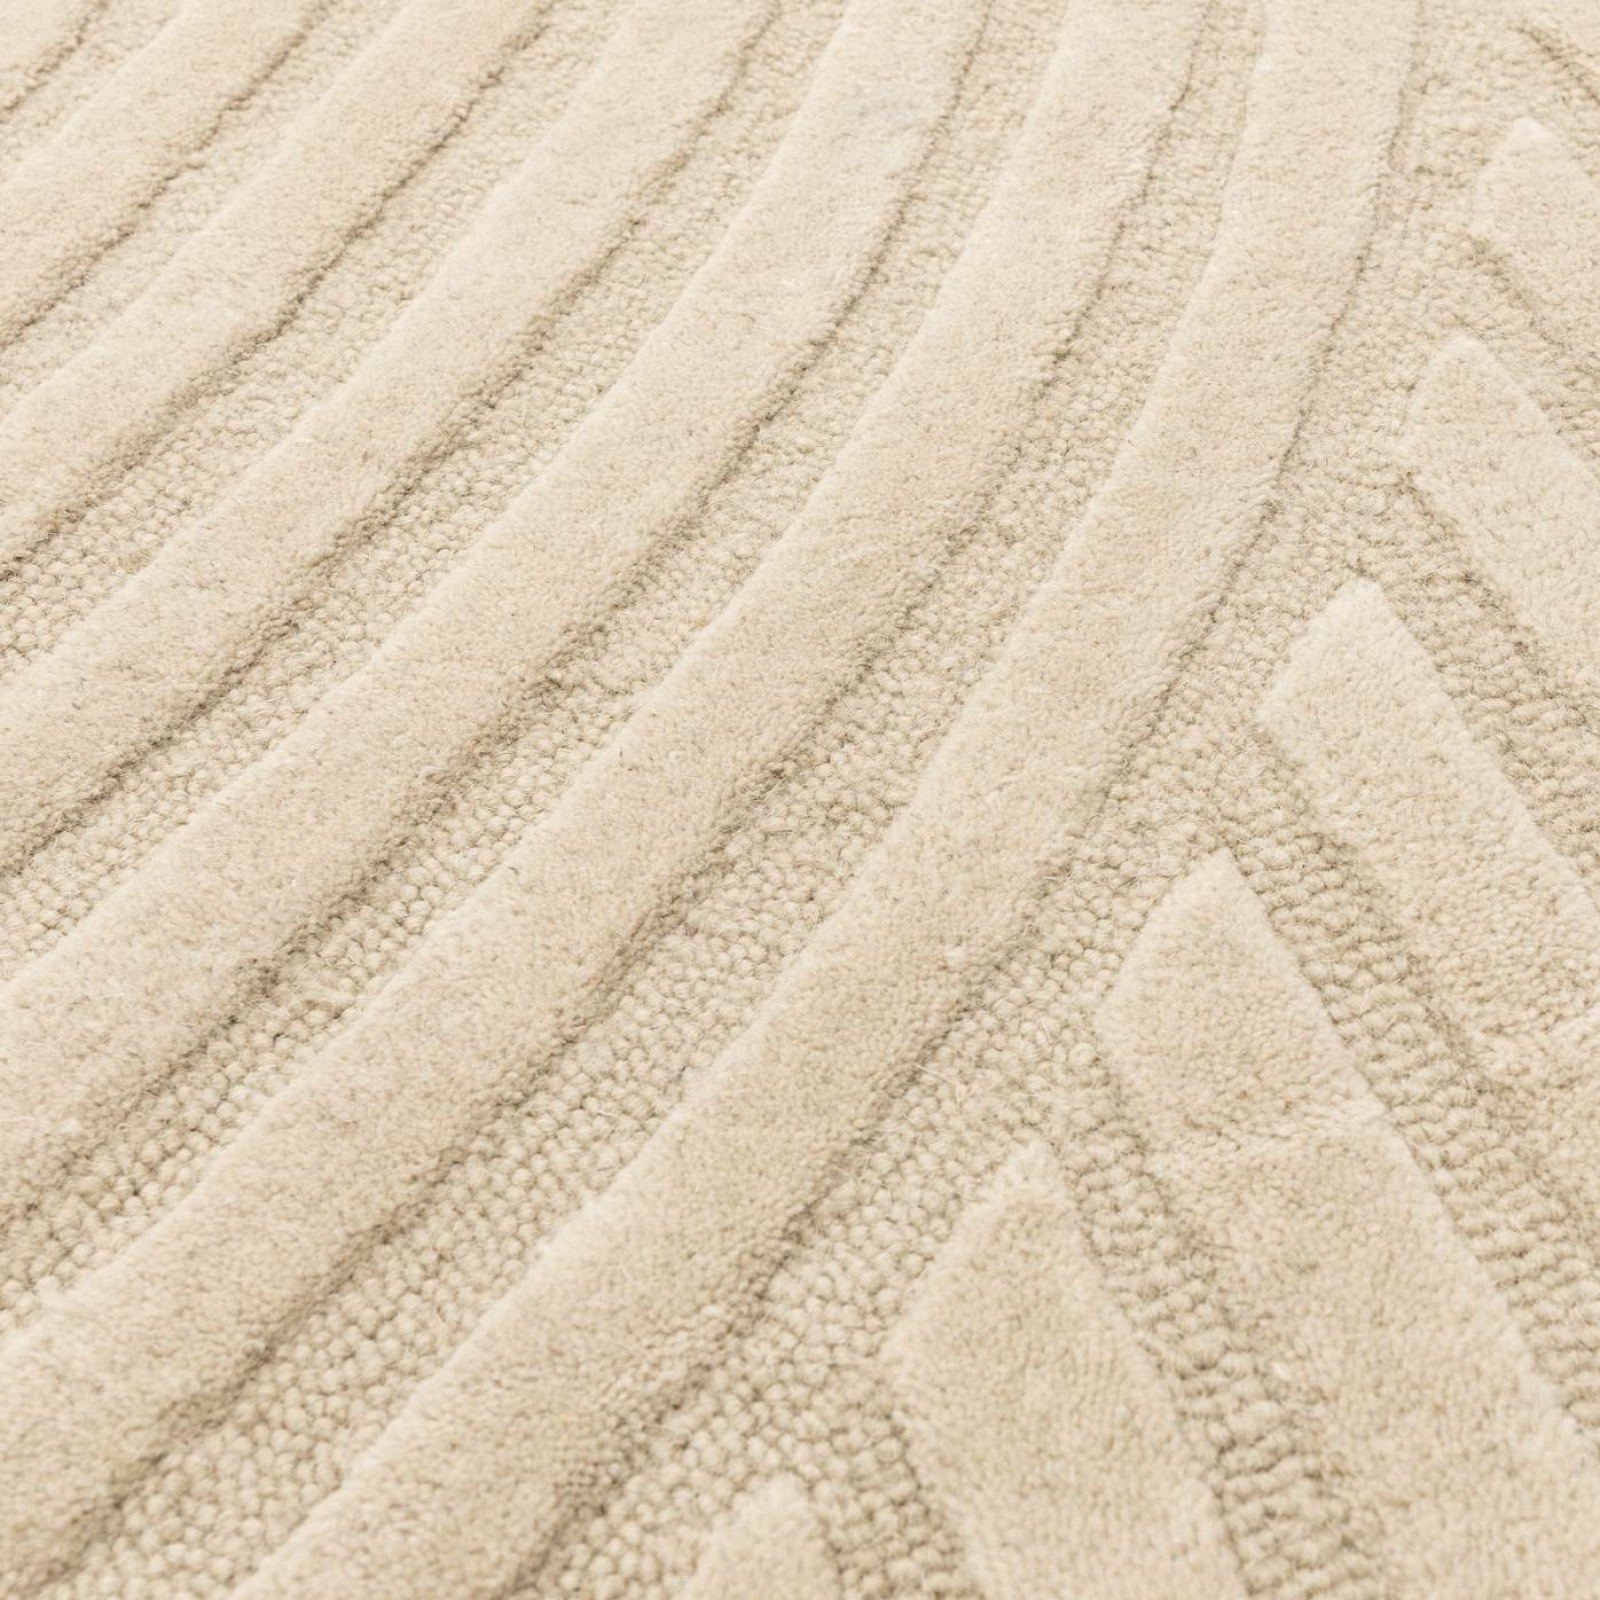 Hague homok szőnyeg